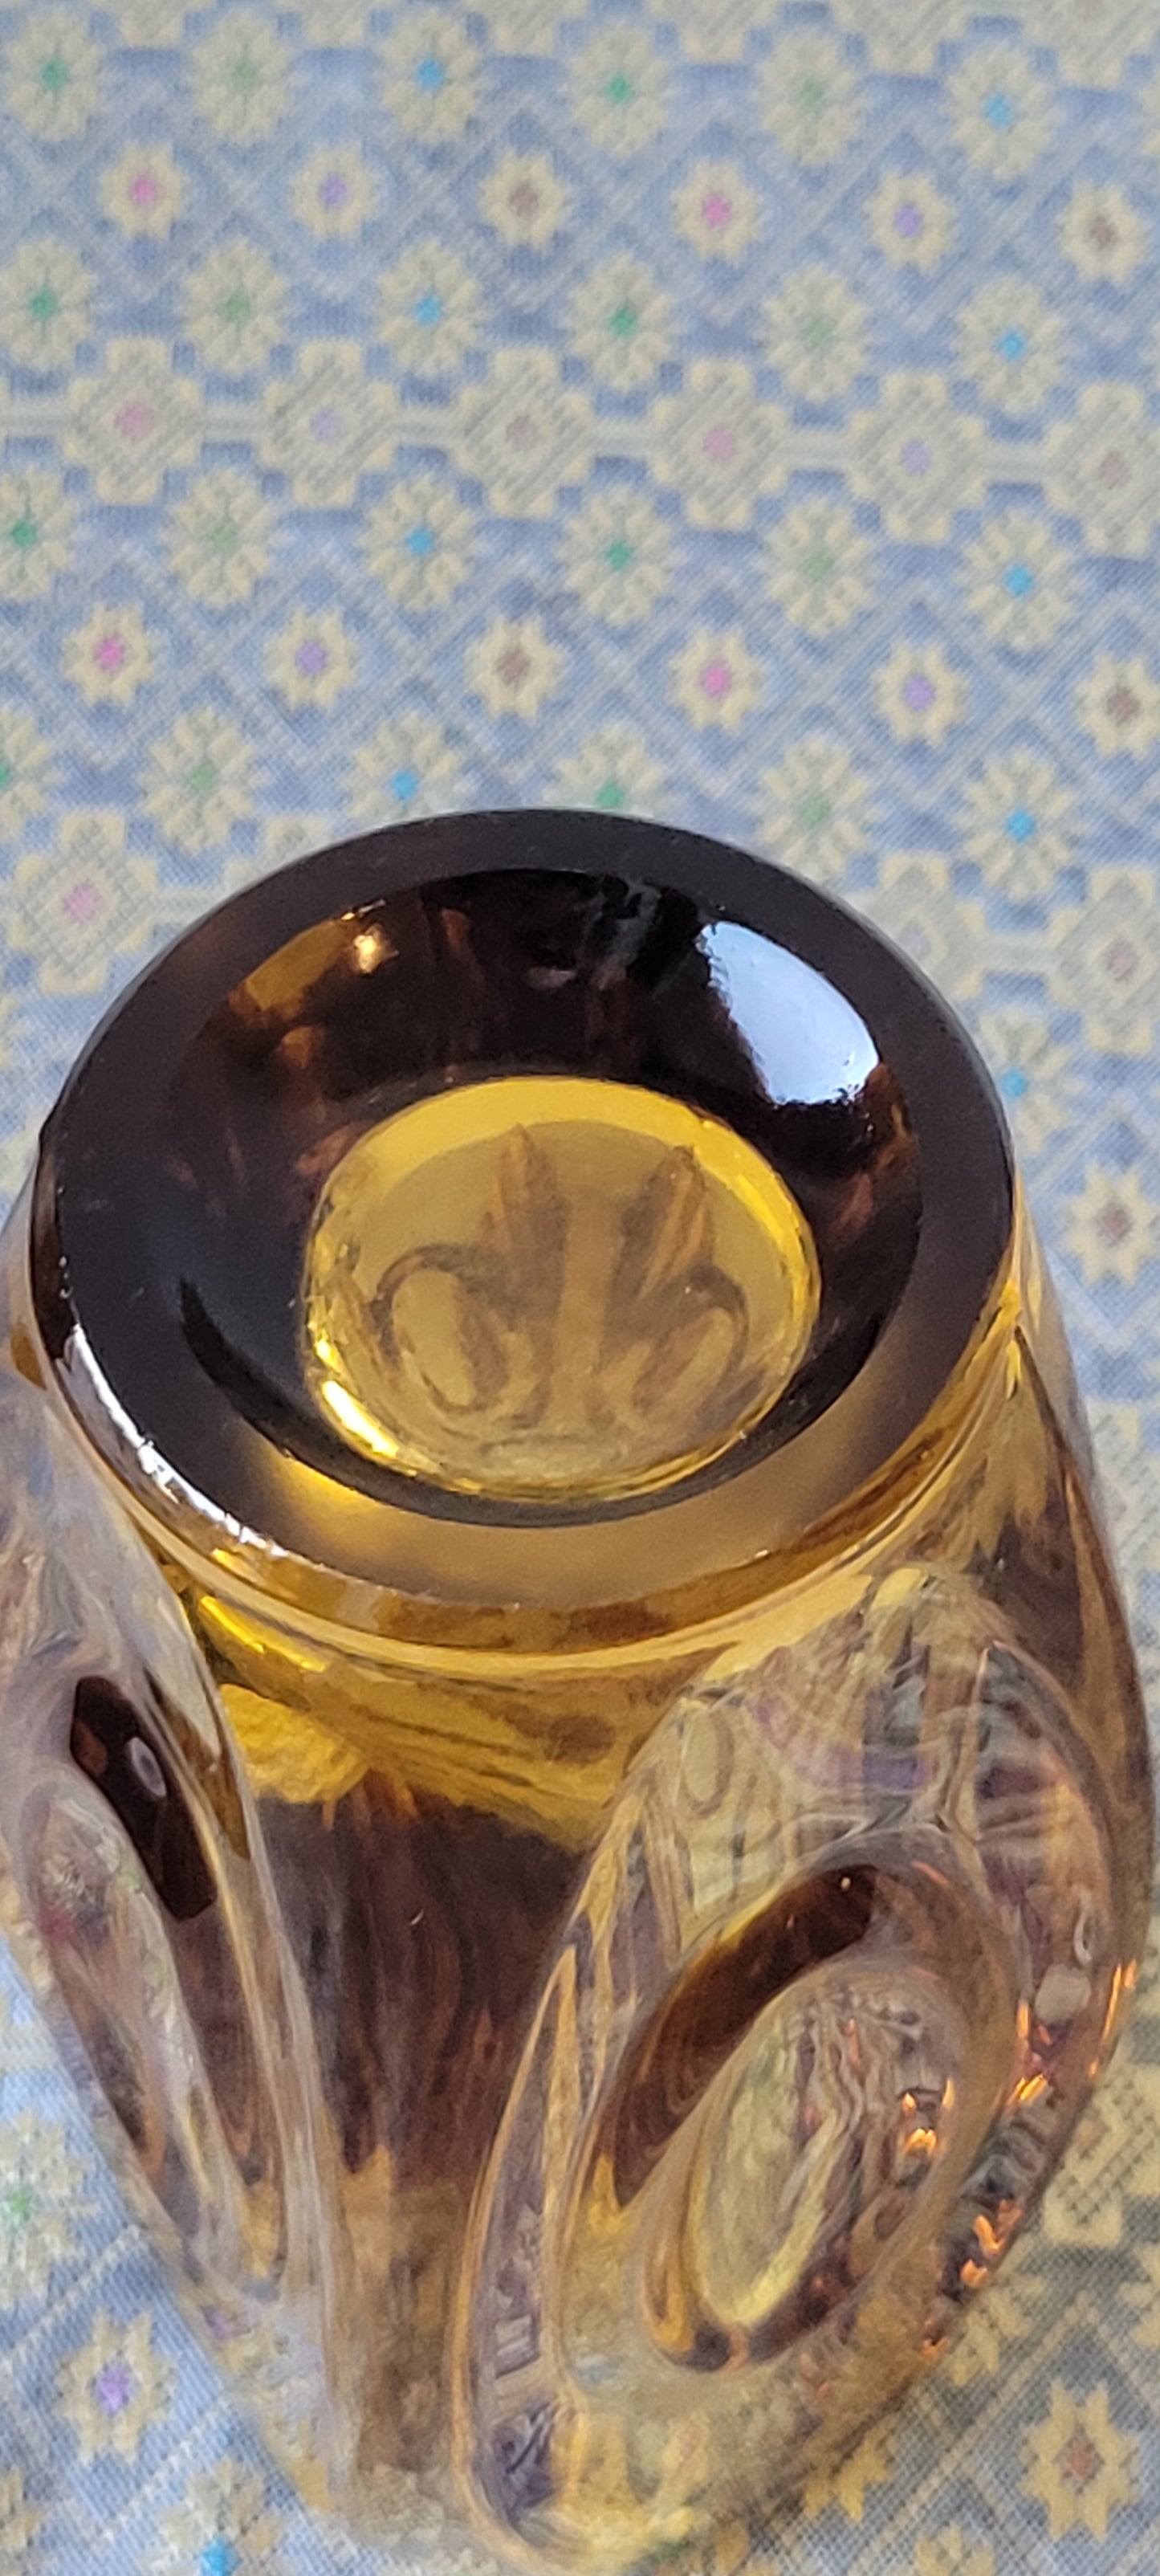 50s Czechoslovakian Art Glass Amber 6" Bullet Vase by Rudolf Schrötter for Sklo Union